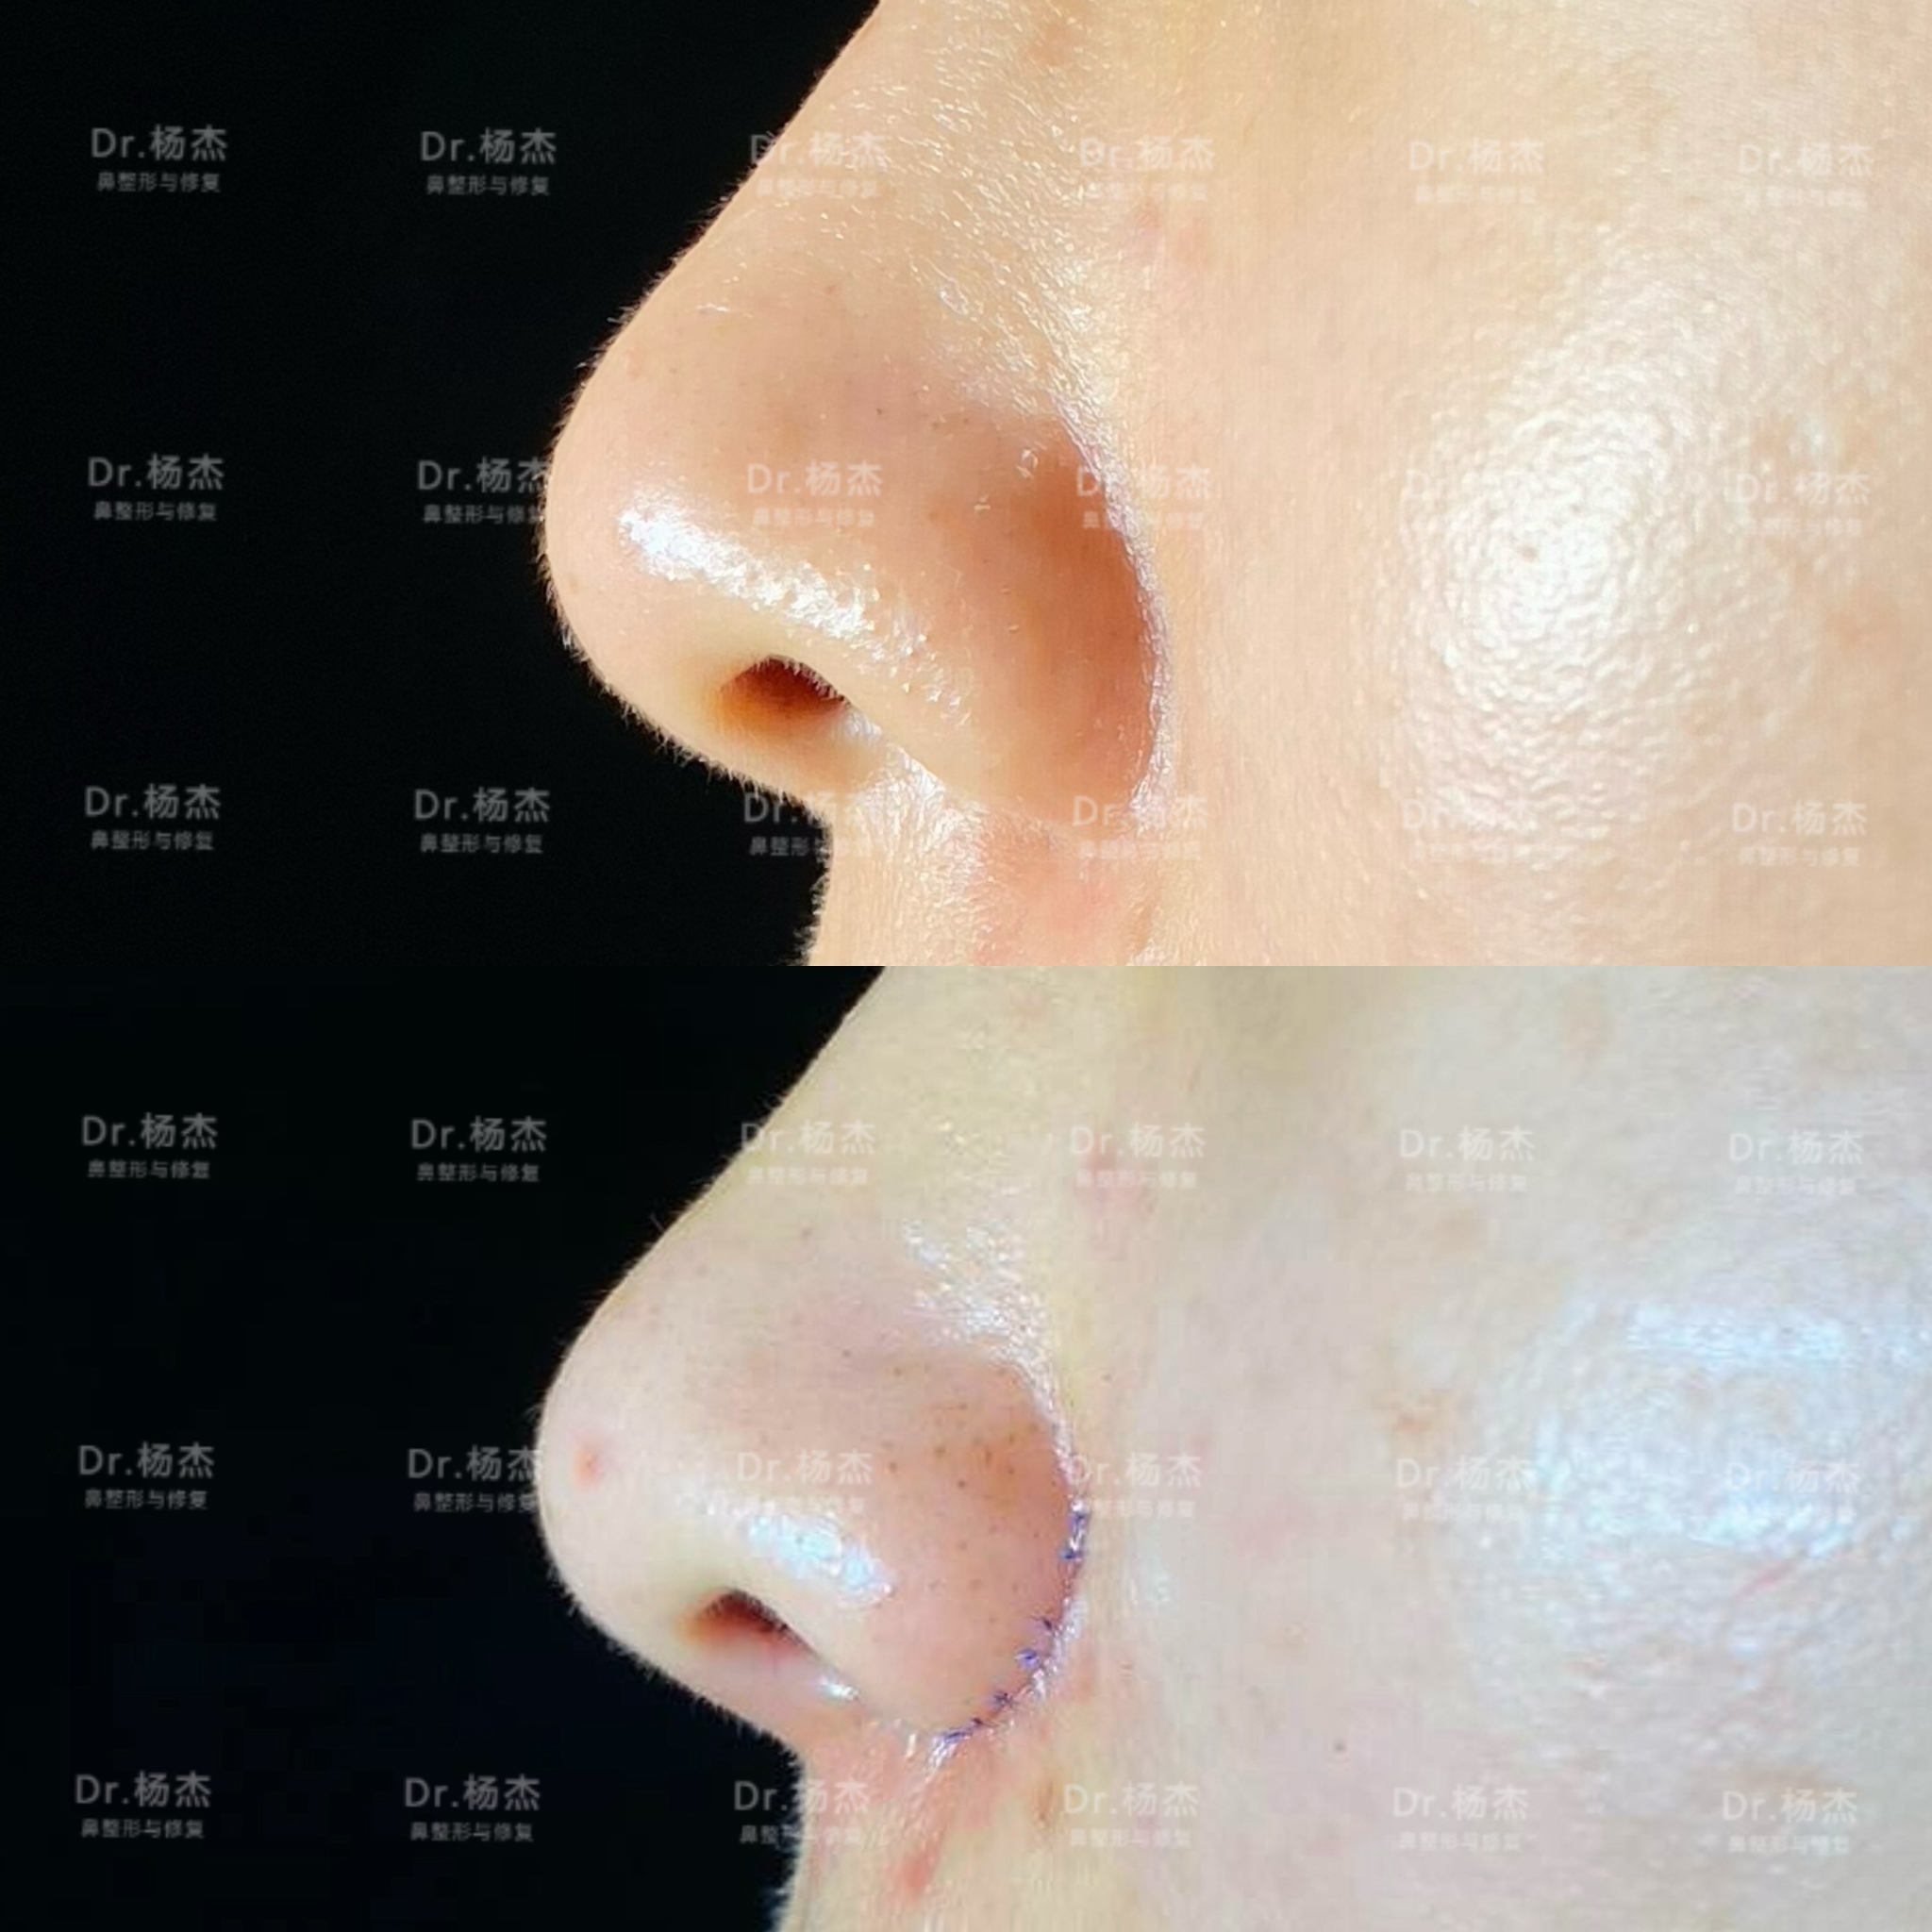 鼻综合（垫高鼻梁、福鼻矫正、鼻翼缩小）手术前_整容通